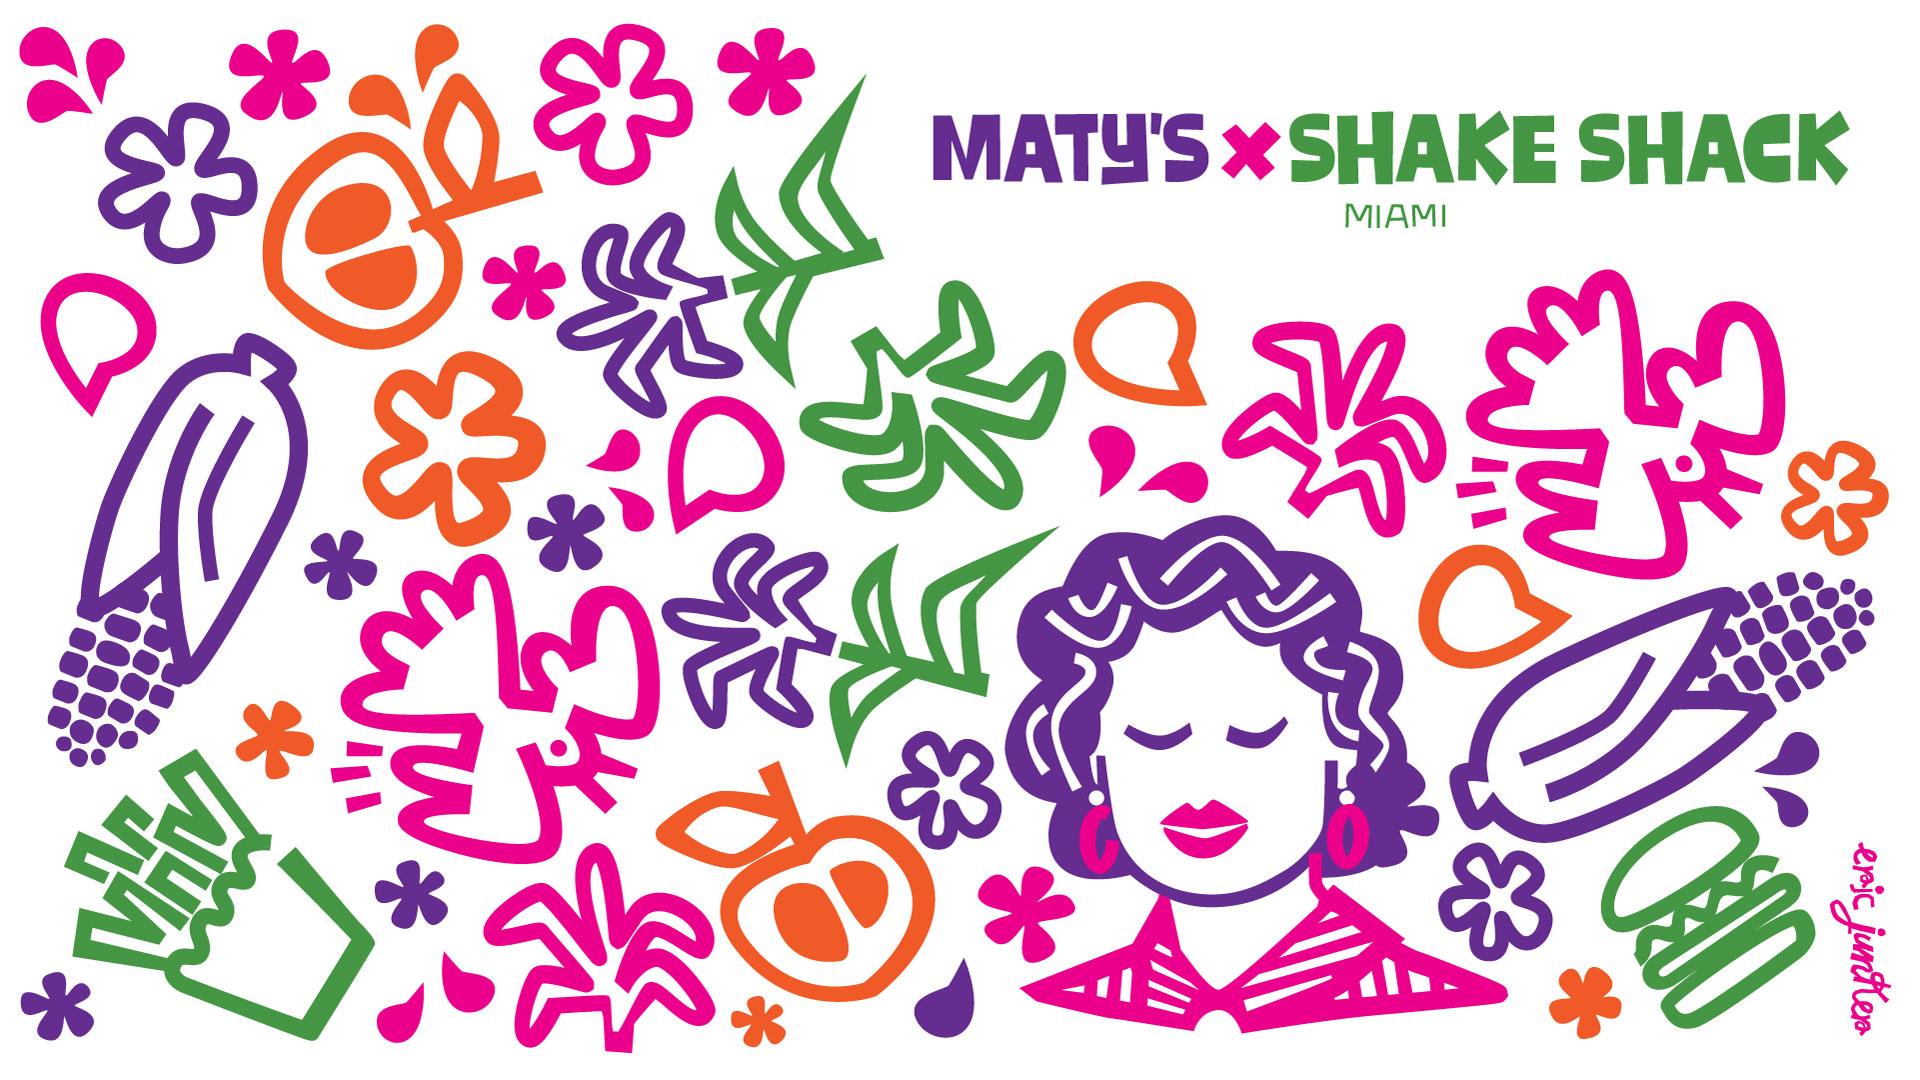 Matty's x Shake Shack